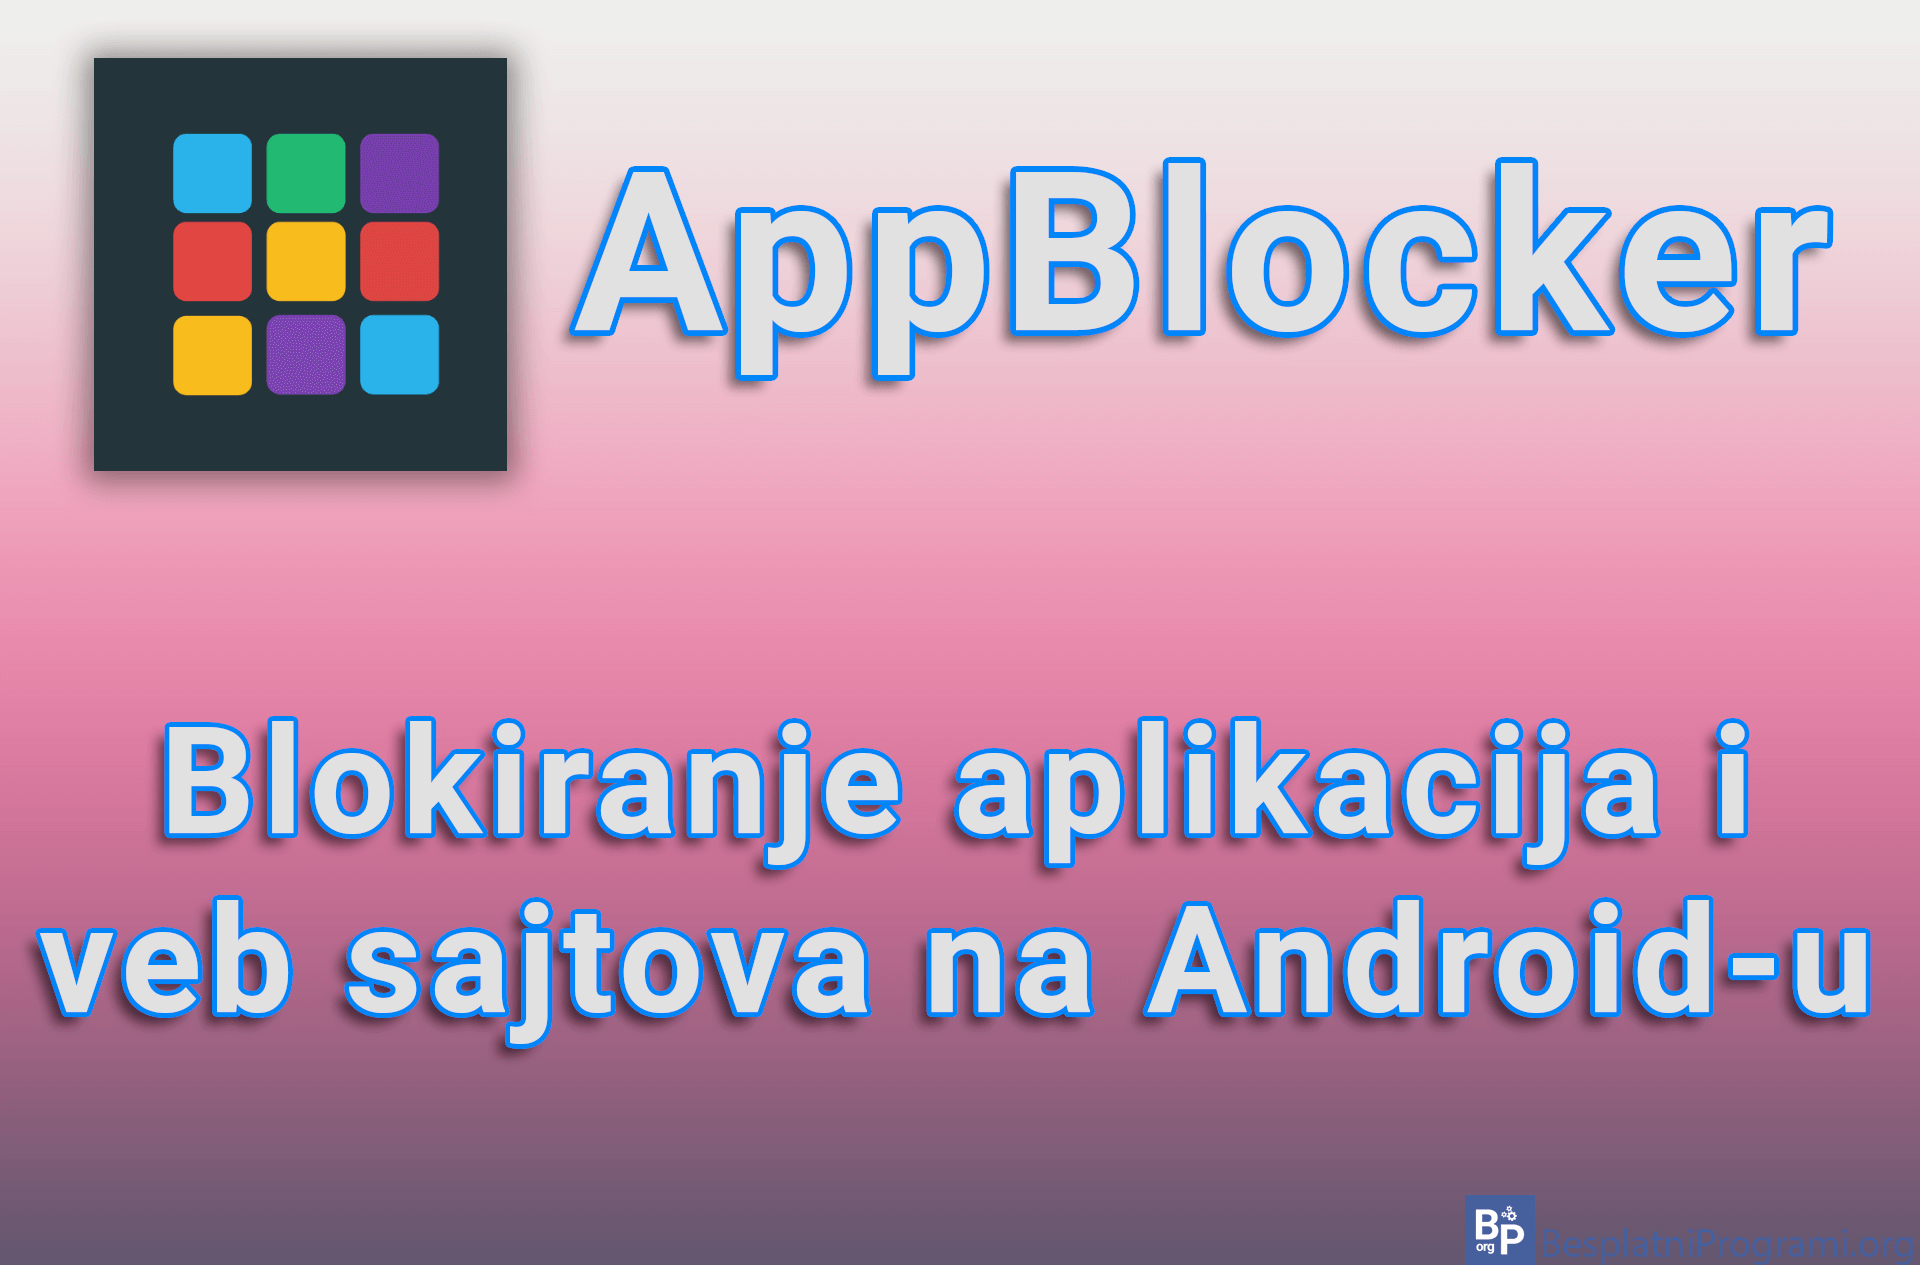 AppBlocker – Blokiranje aplikacija i veb sajtova na Android-u